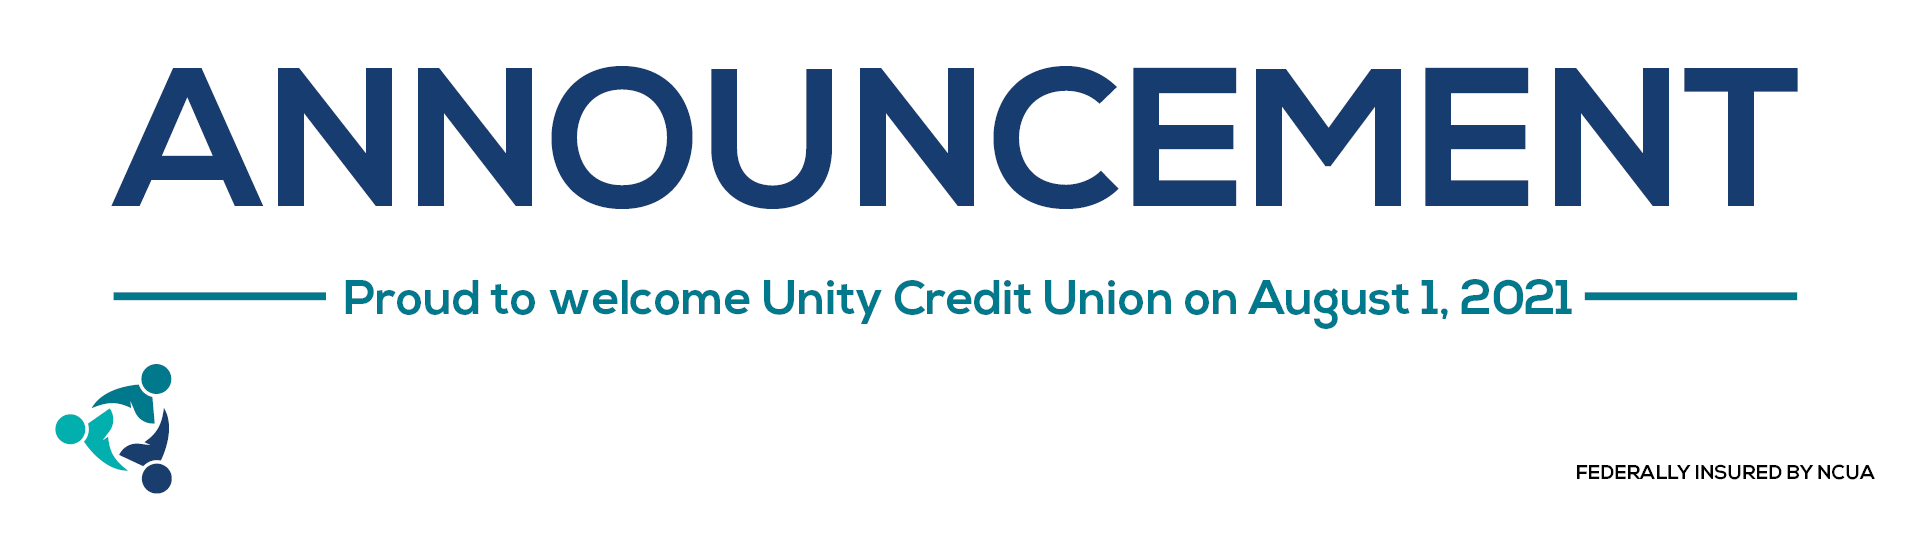 unity credit union el segundo